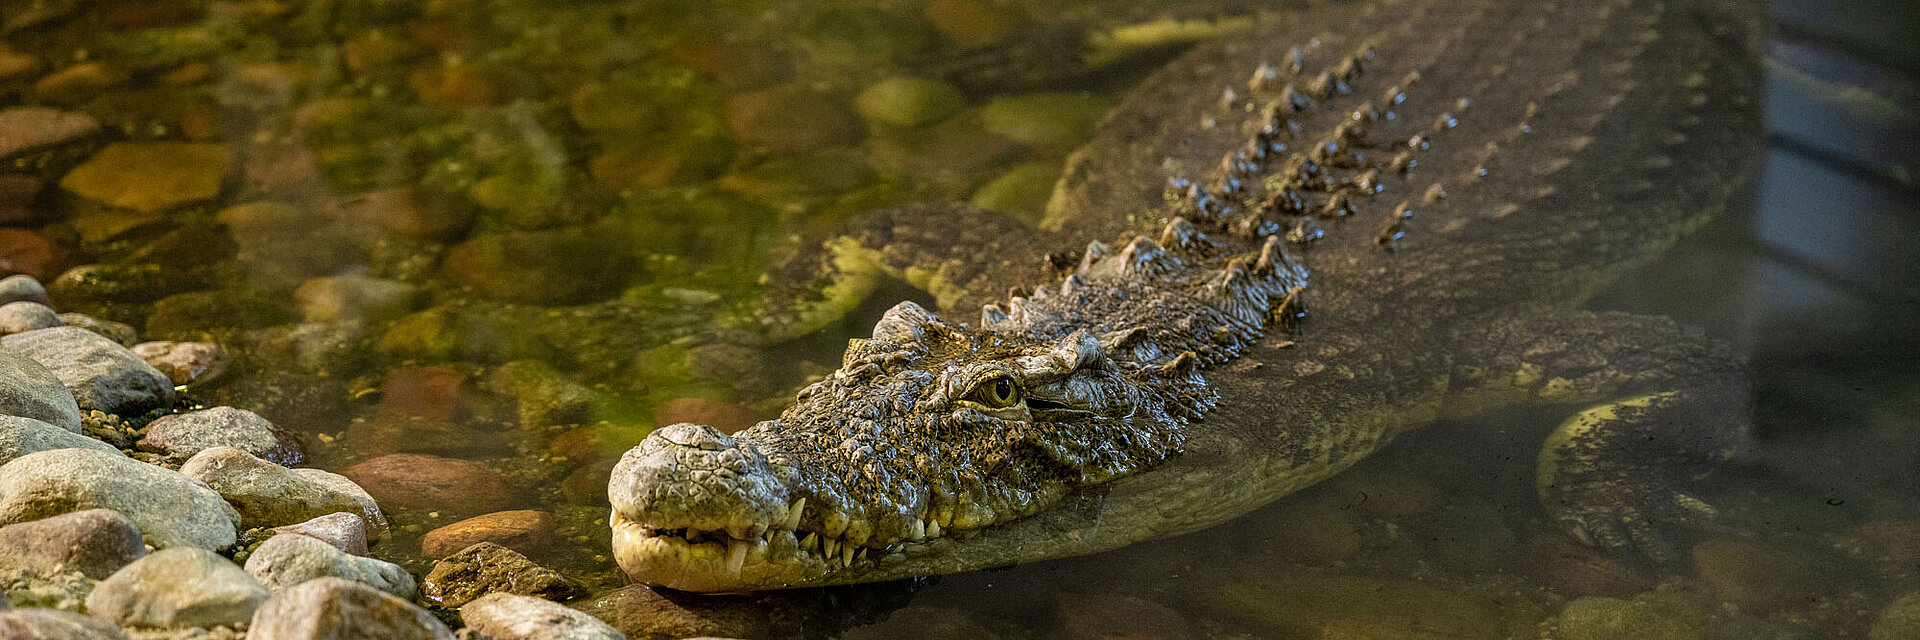 Das Krokodil Theophila im Wasserwerk Colbitz